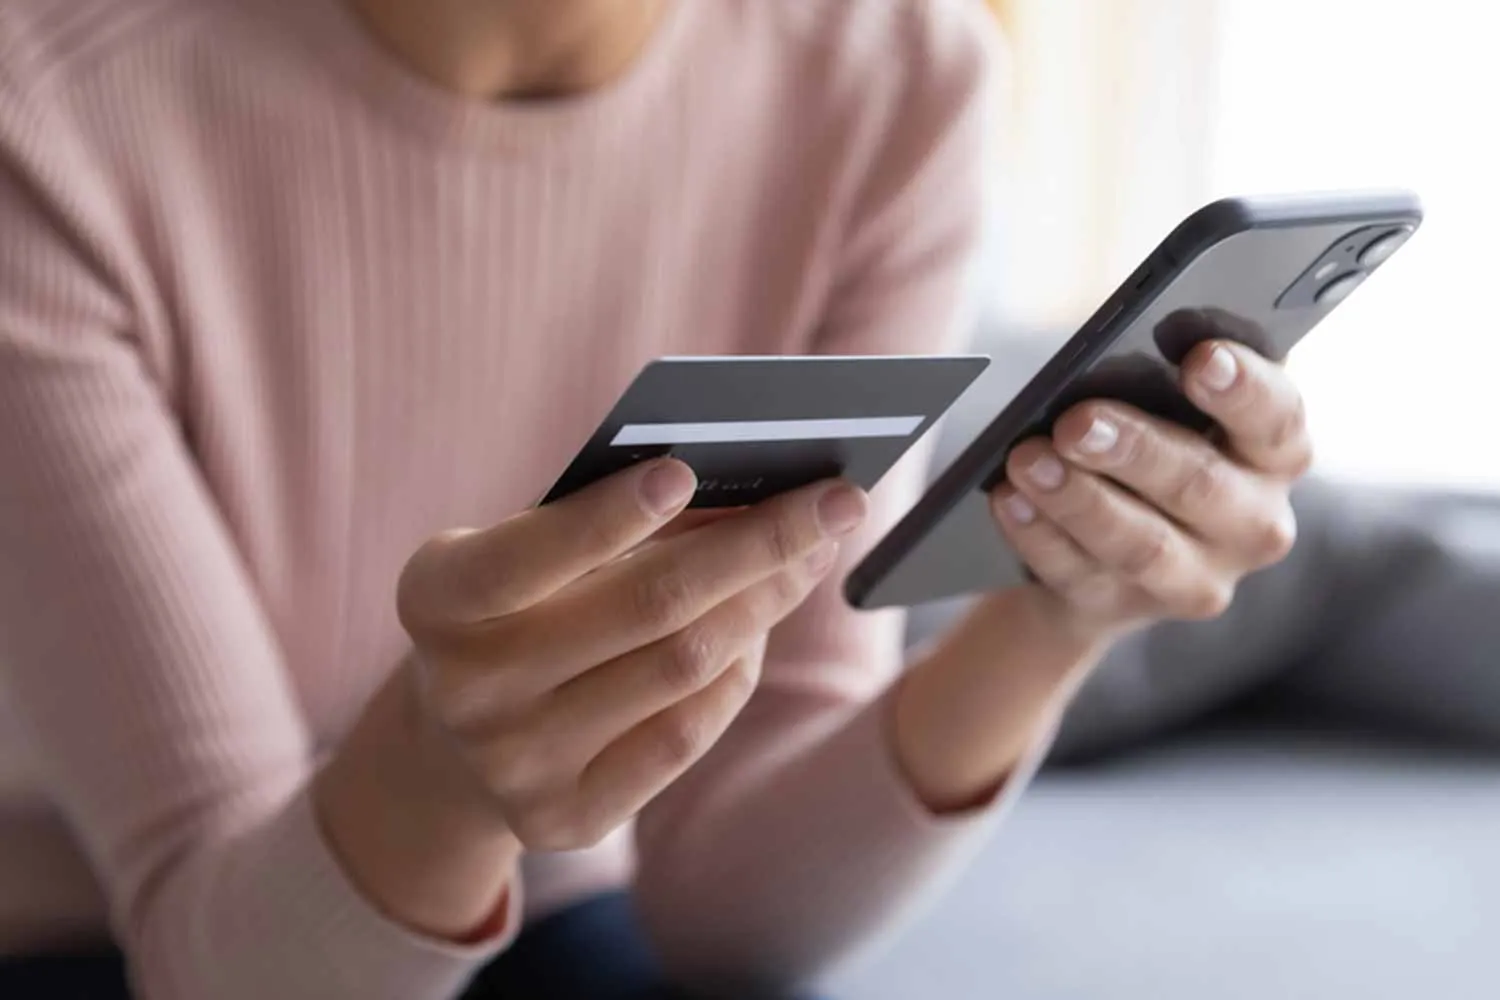 Cẩn trọng với những trang web lạ khi mua sắm online bằng thẻ tín dụng